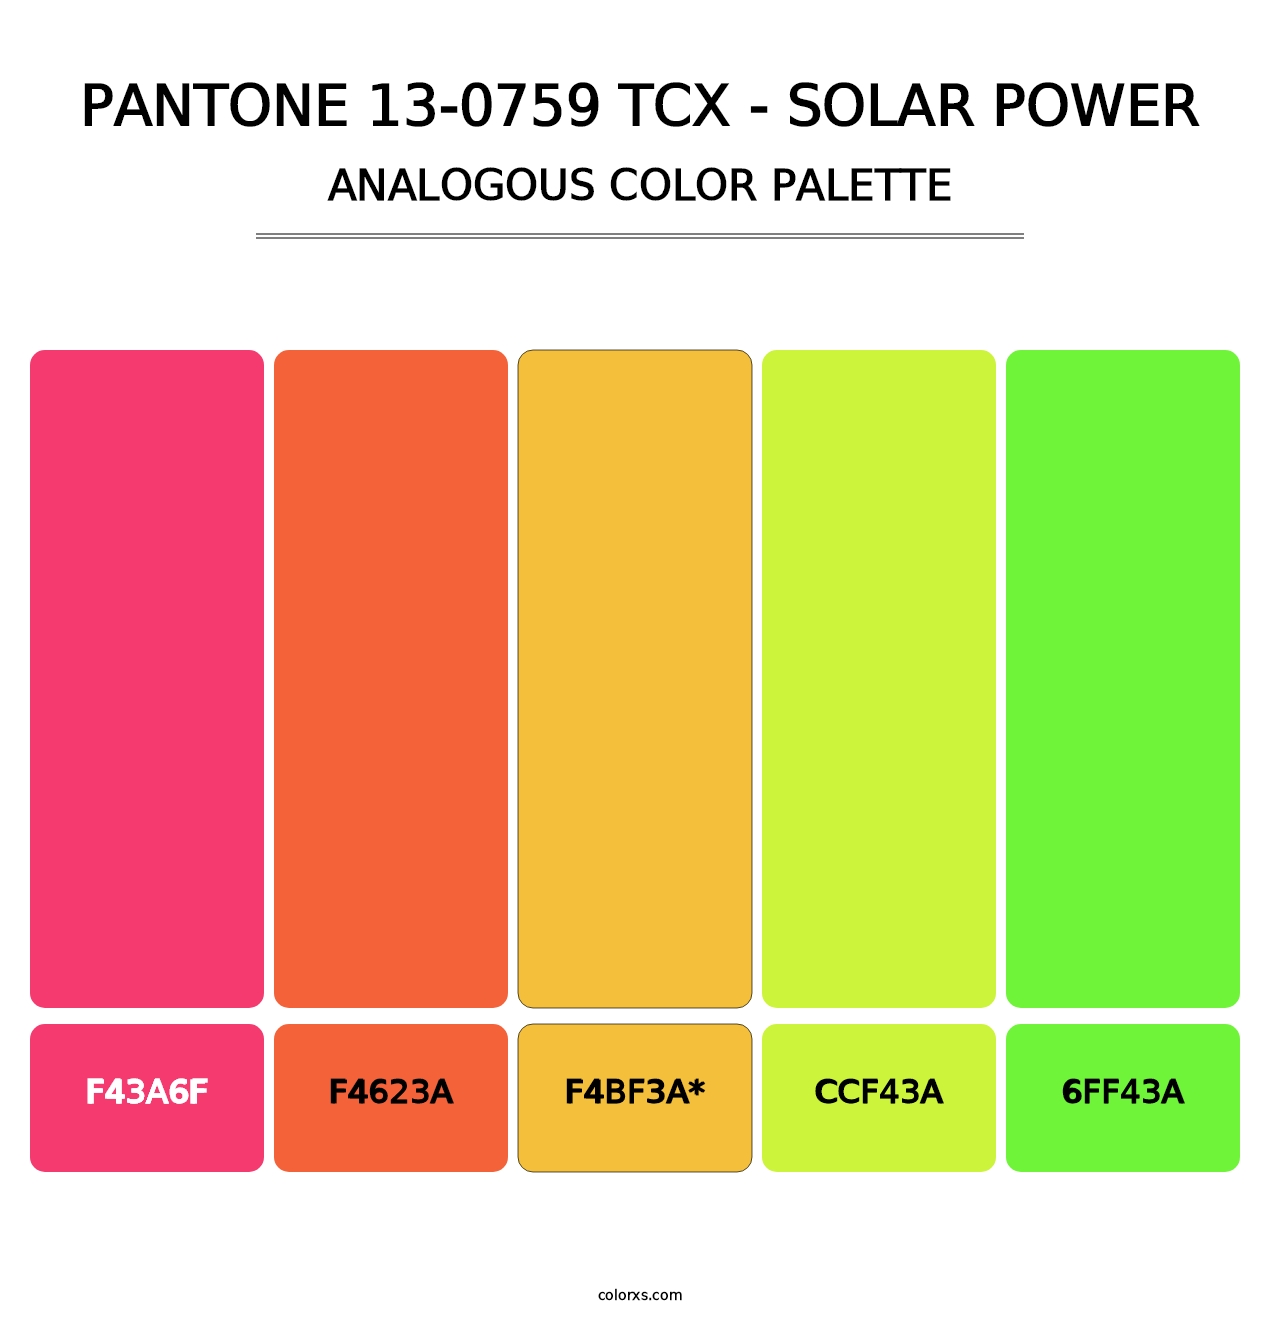 PANTONE 13-0759 TCX - Solar Power - Analogous Color Palette